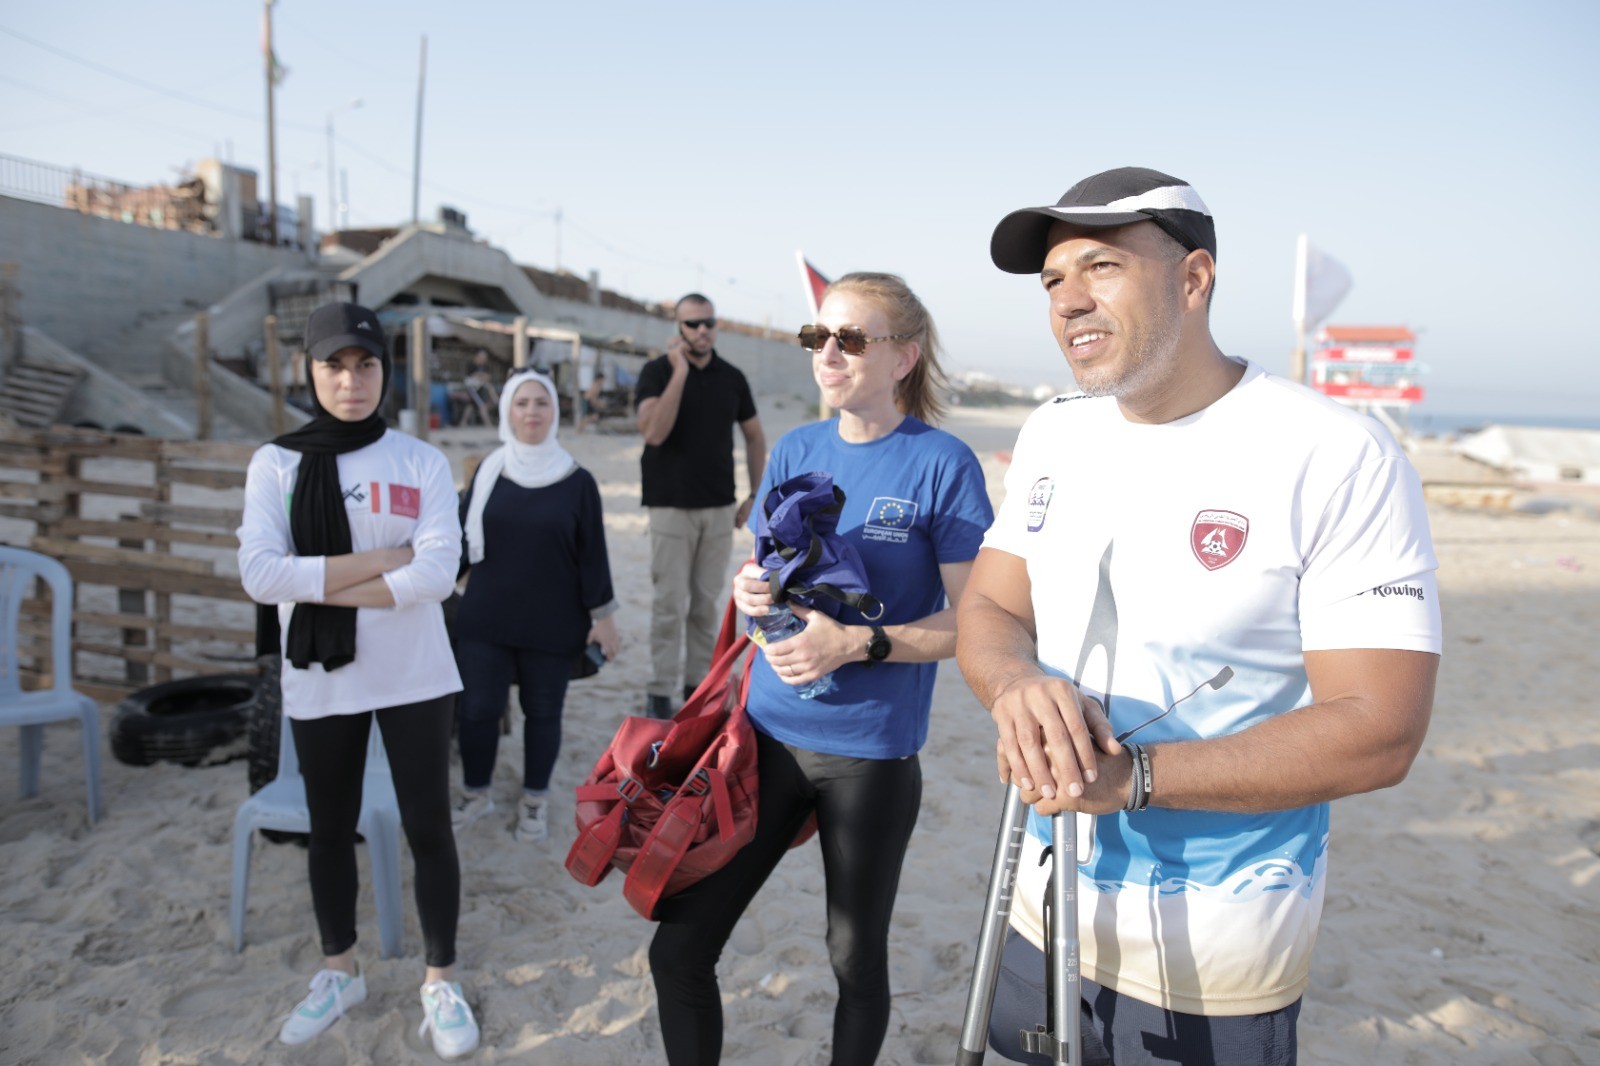 وفد من الاتحاد الأوروبي يمارس رياضة التجديف على شاطئ بحر غزة بدعوة من اتحاد الشراع والتجديف 10.jpg